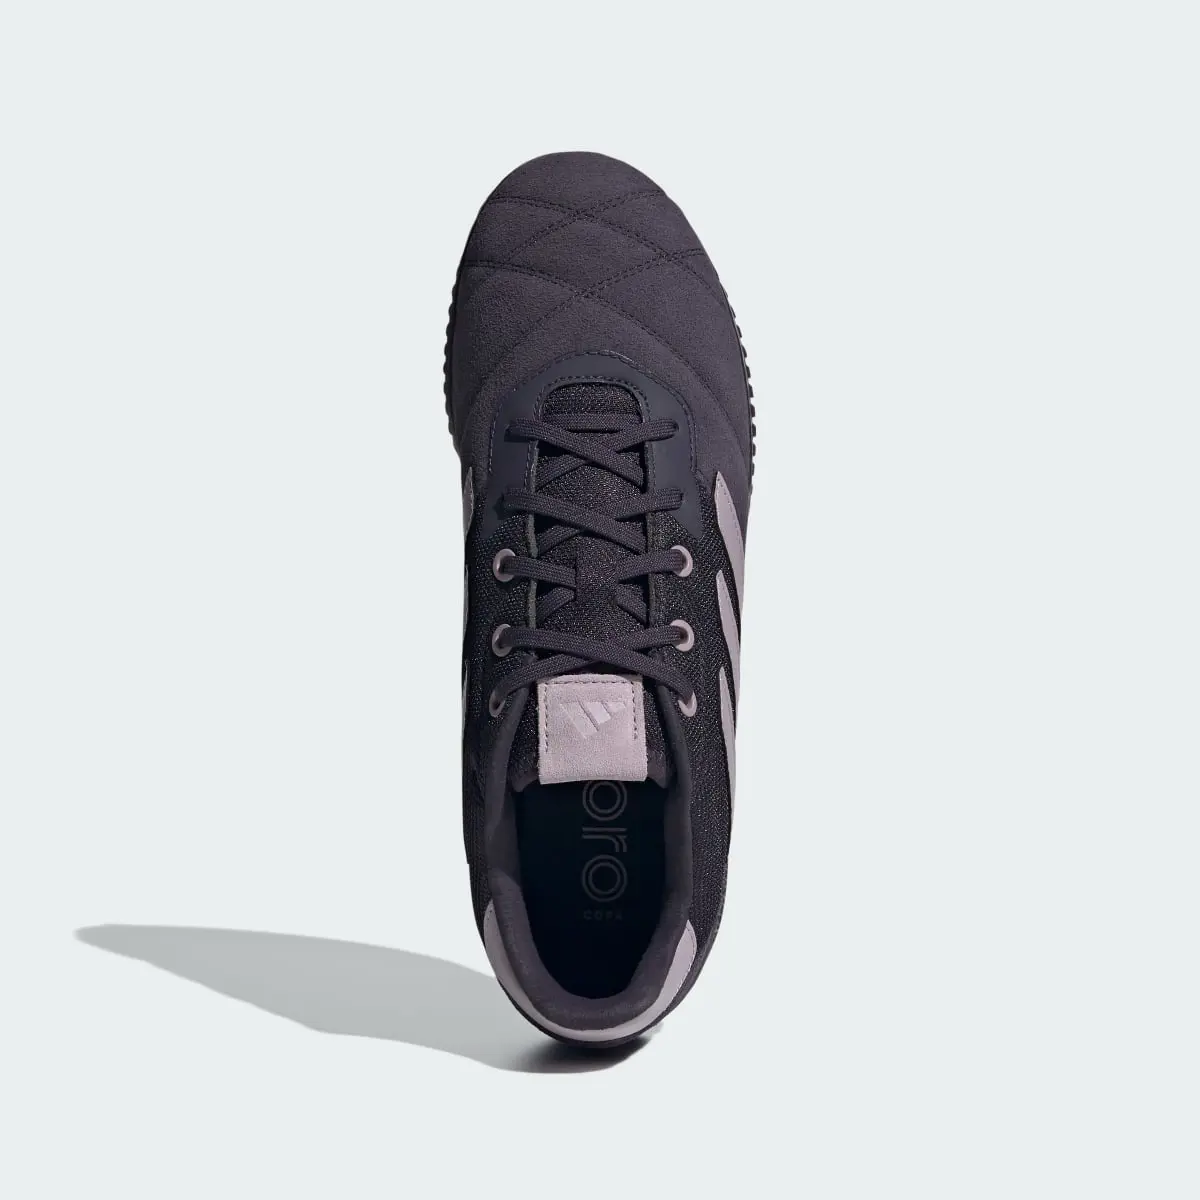 Adidas Copa Gloro Indoor Boots. 3